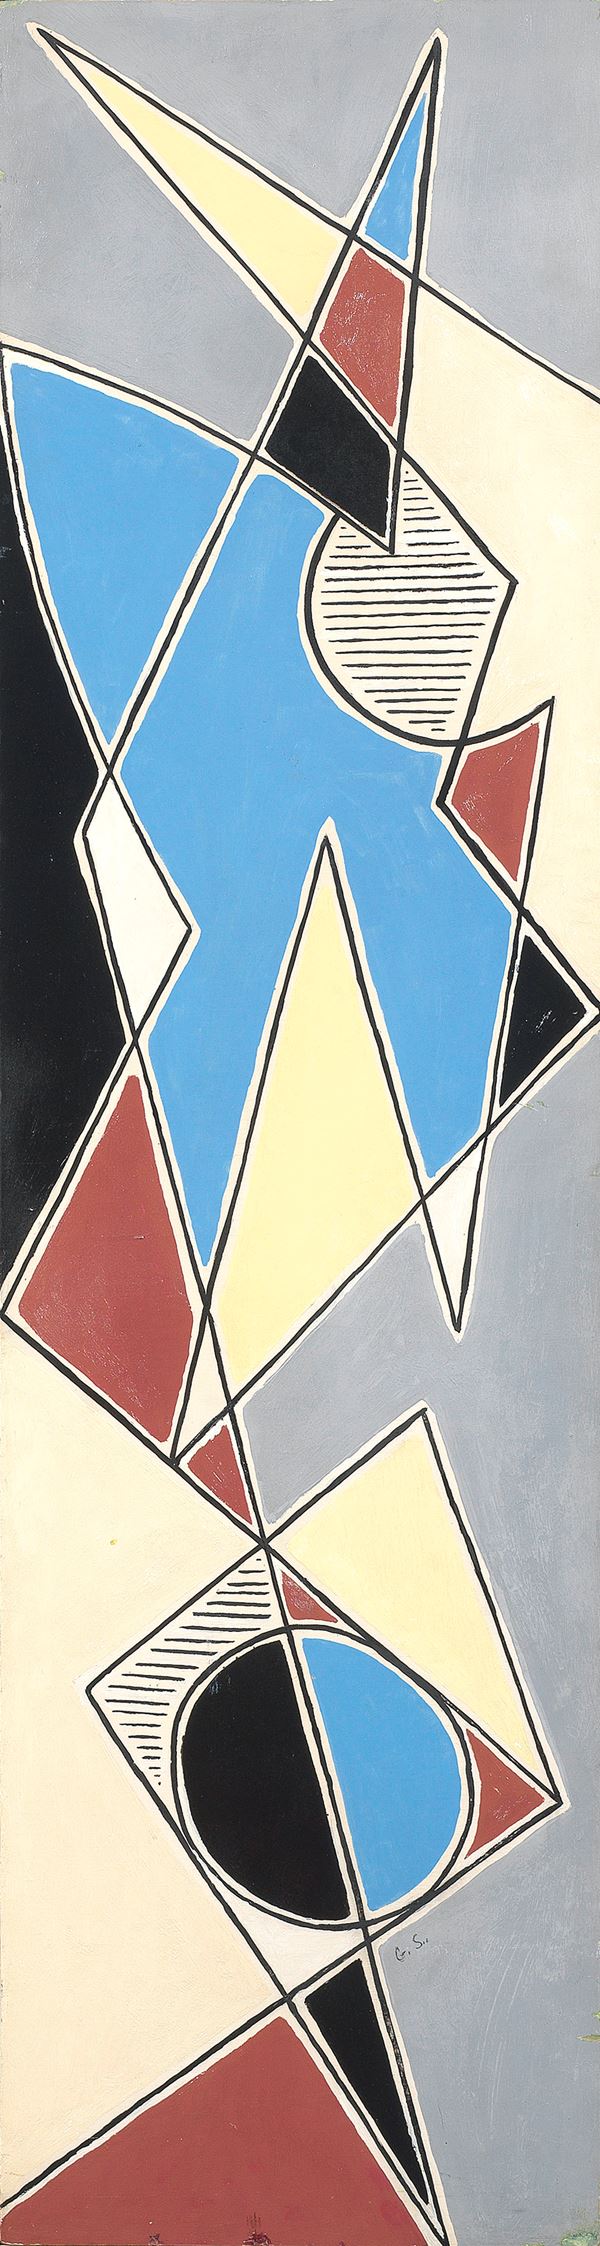 Gino Severini : Composizione astratta  (1959)  - Olio su tavola - Auction ARTE MODERNA - II - Casa d'aste Farsettiarte